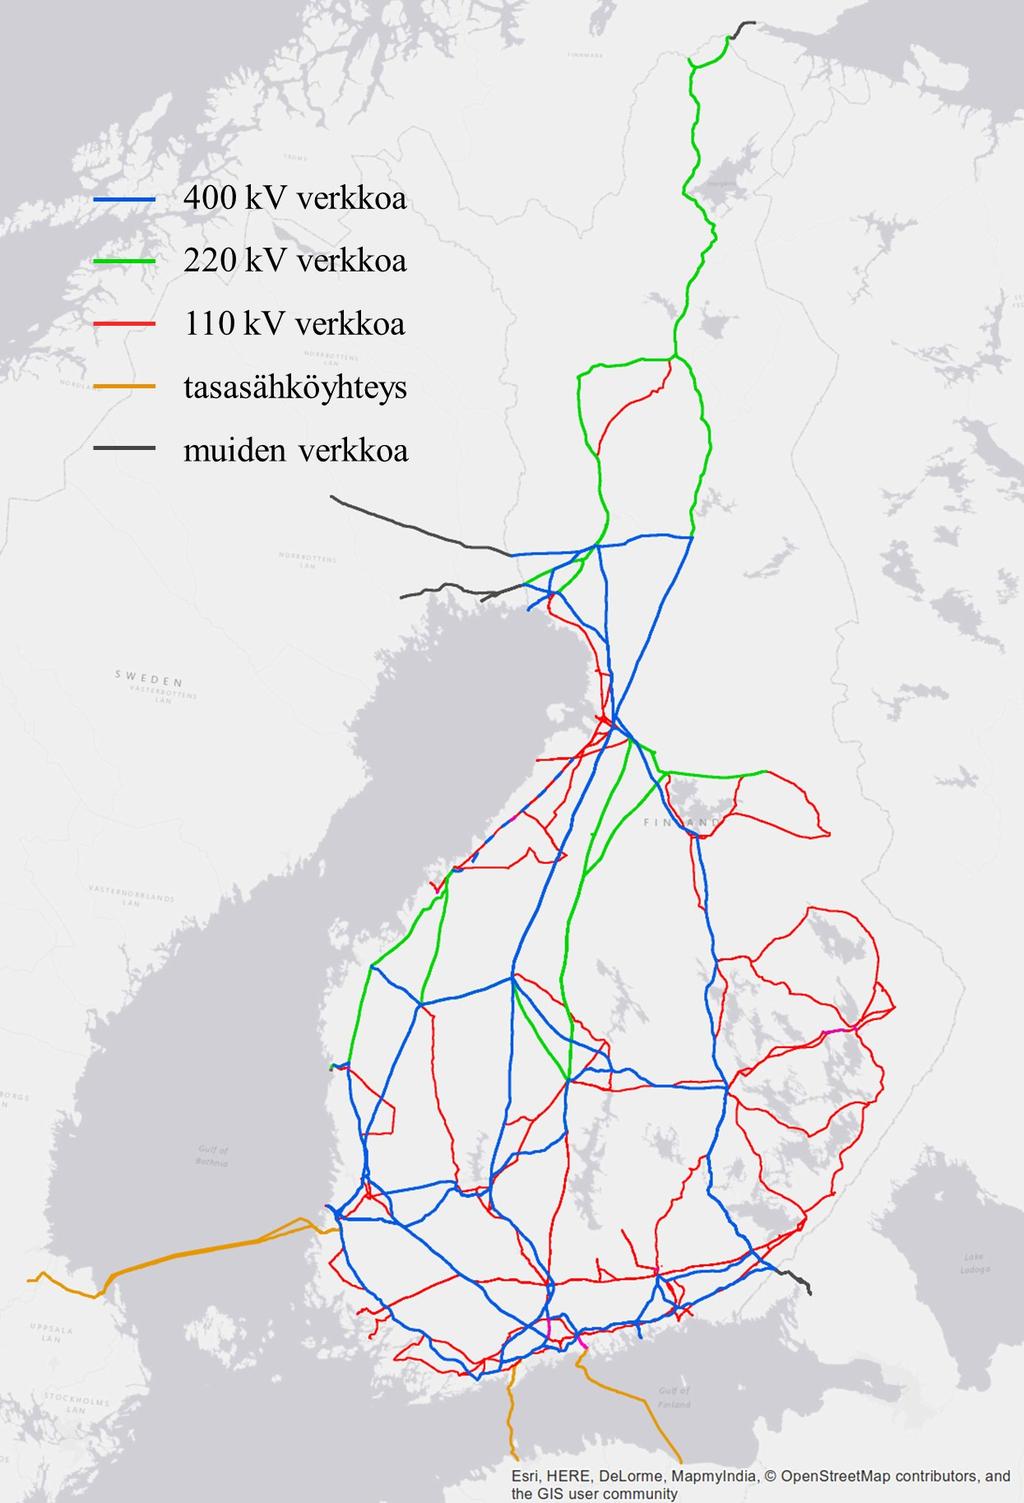 Kuvassa 1 on esitetty Suomen kantaverkko sekä siihen liittyvät rajayhdysjohdot. Kantaverkkoon kuuluu noin 14 000 km voimajohtoa ja yli 110 sähköasemaa.